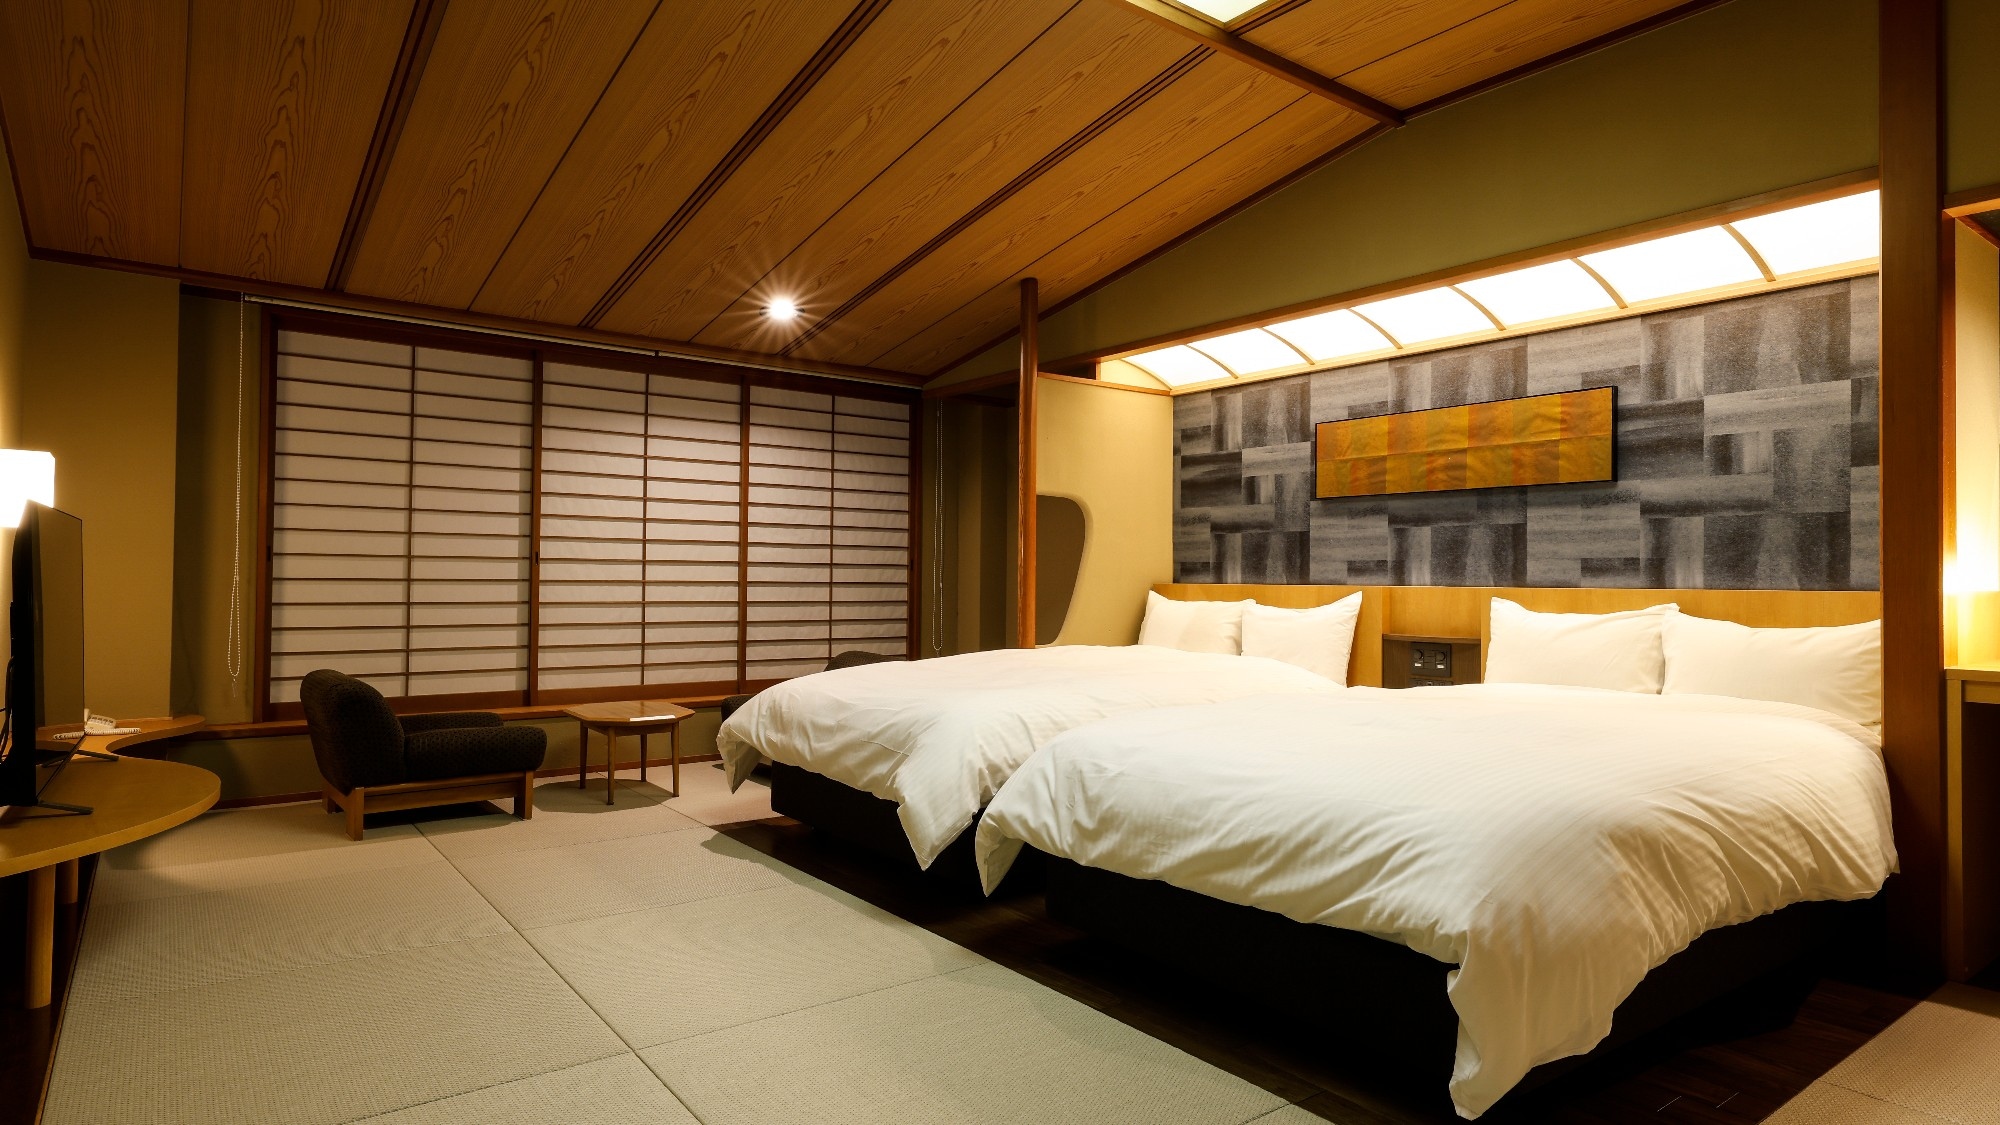 【舒適的日西合璧床房】融合了日式休閒與西式懷石風格的客房。